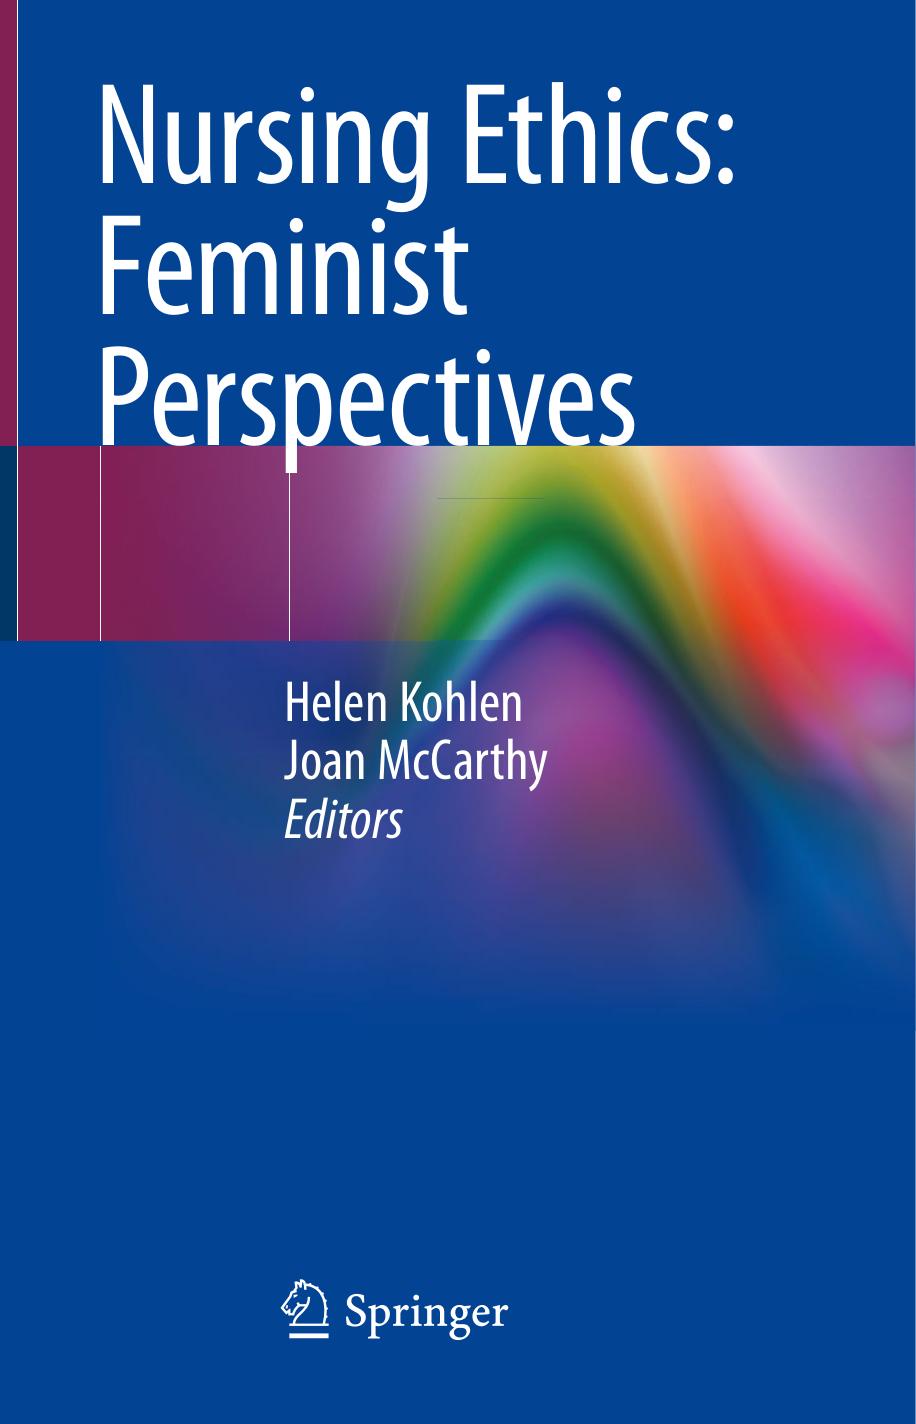 Feminist Perspectives-Springer International Publishing (2020)